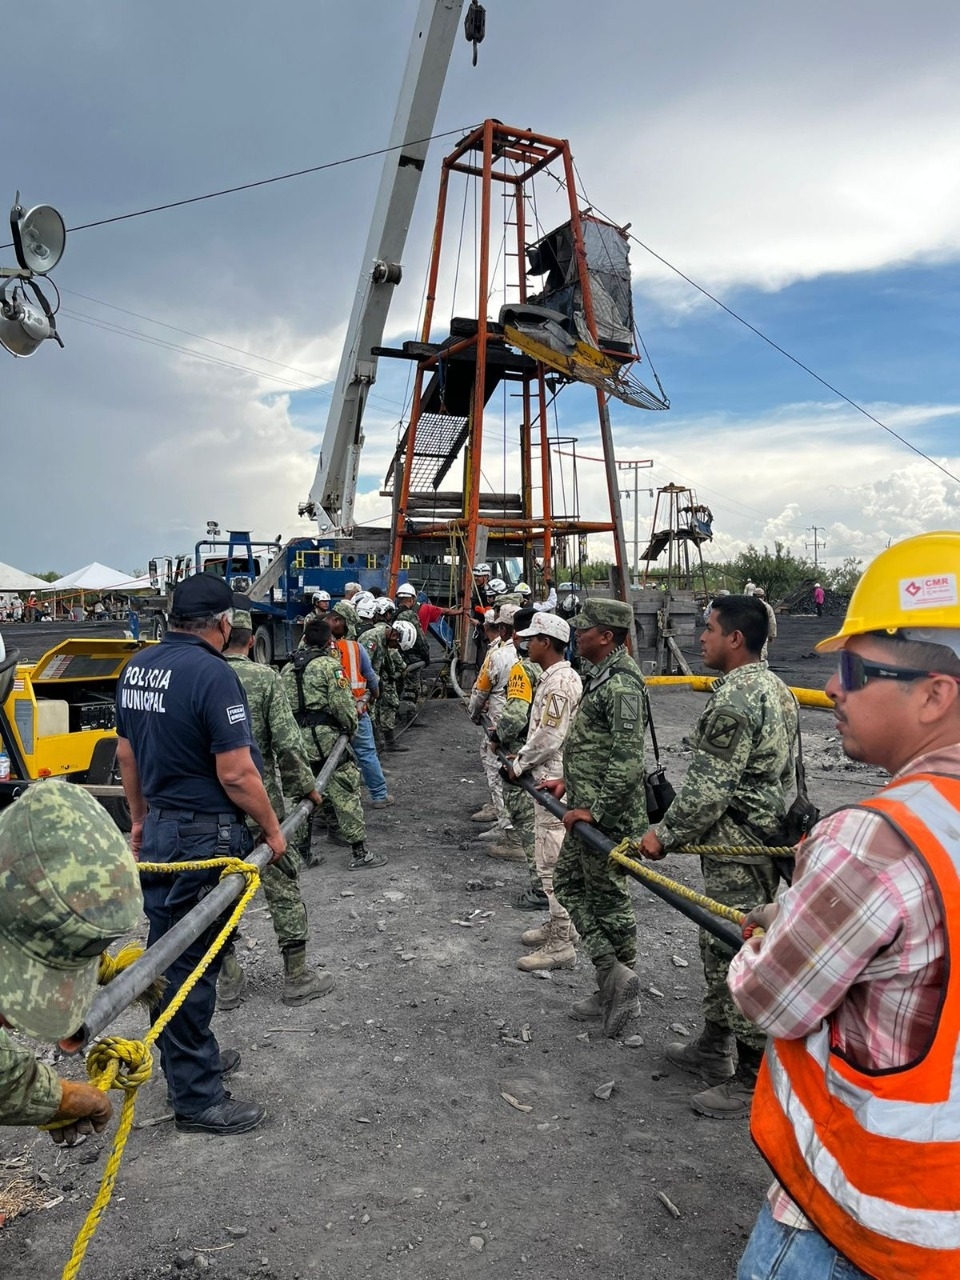 Los 10 mineros quedaron atrapados dentro del pozo 'El Pinabete' el pasado 3 de agosto en Coahuila